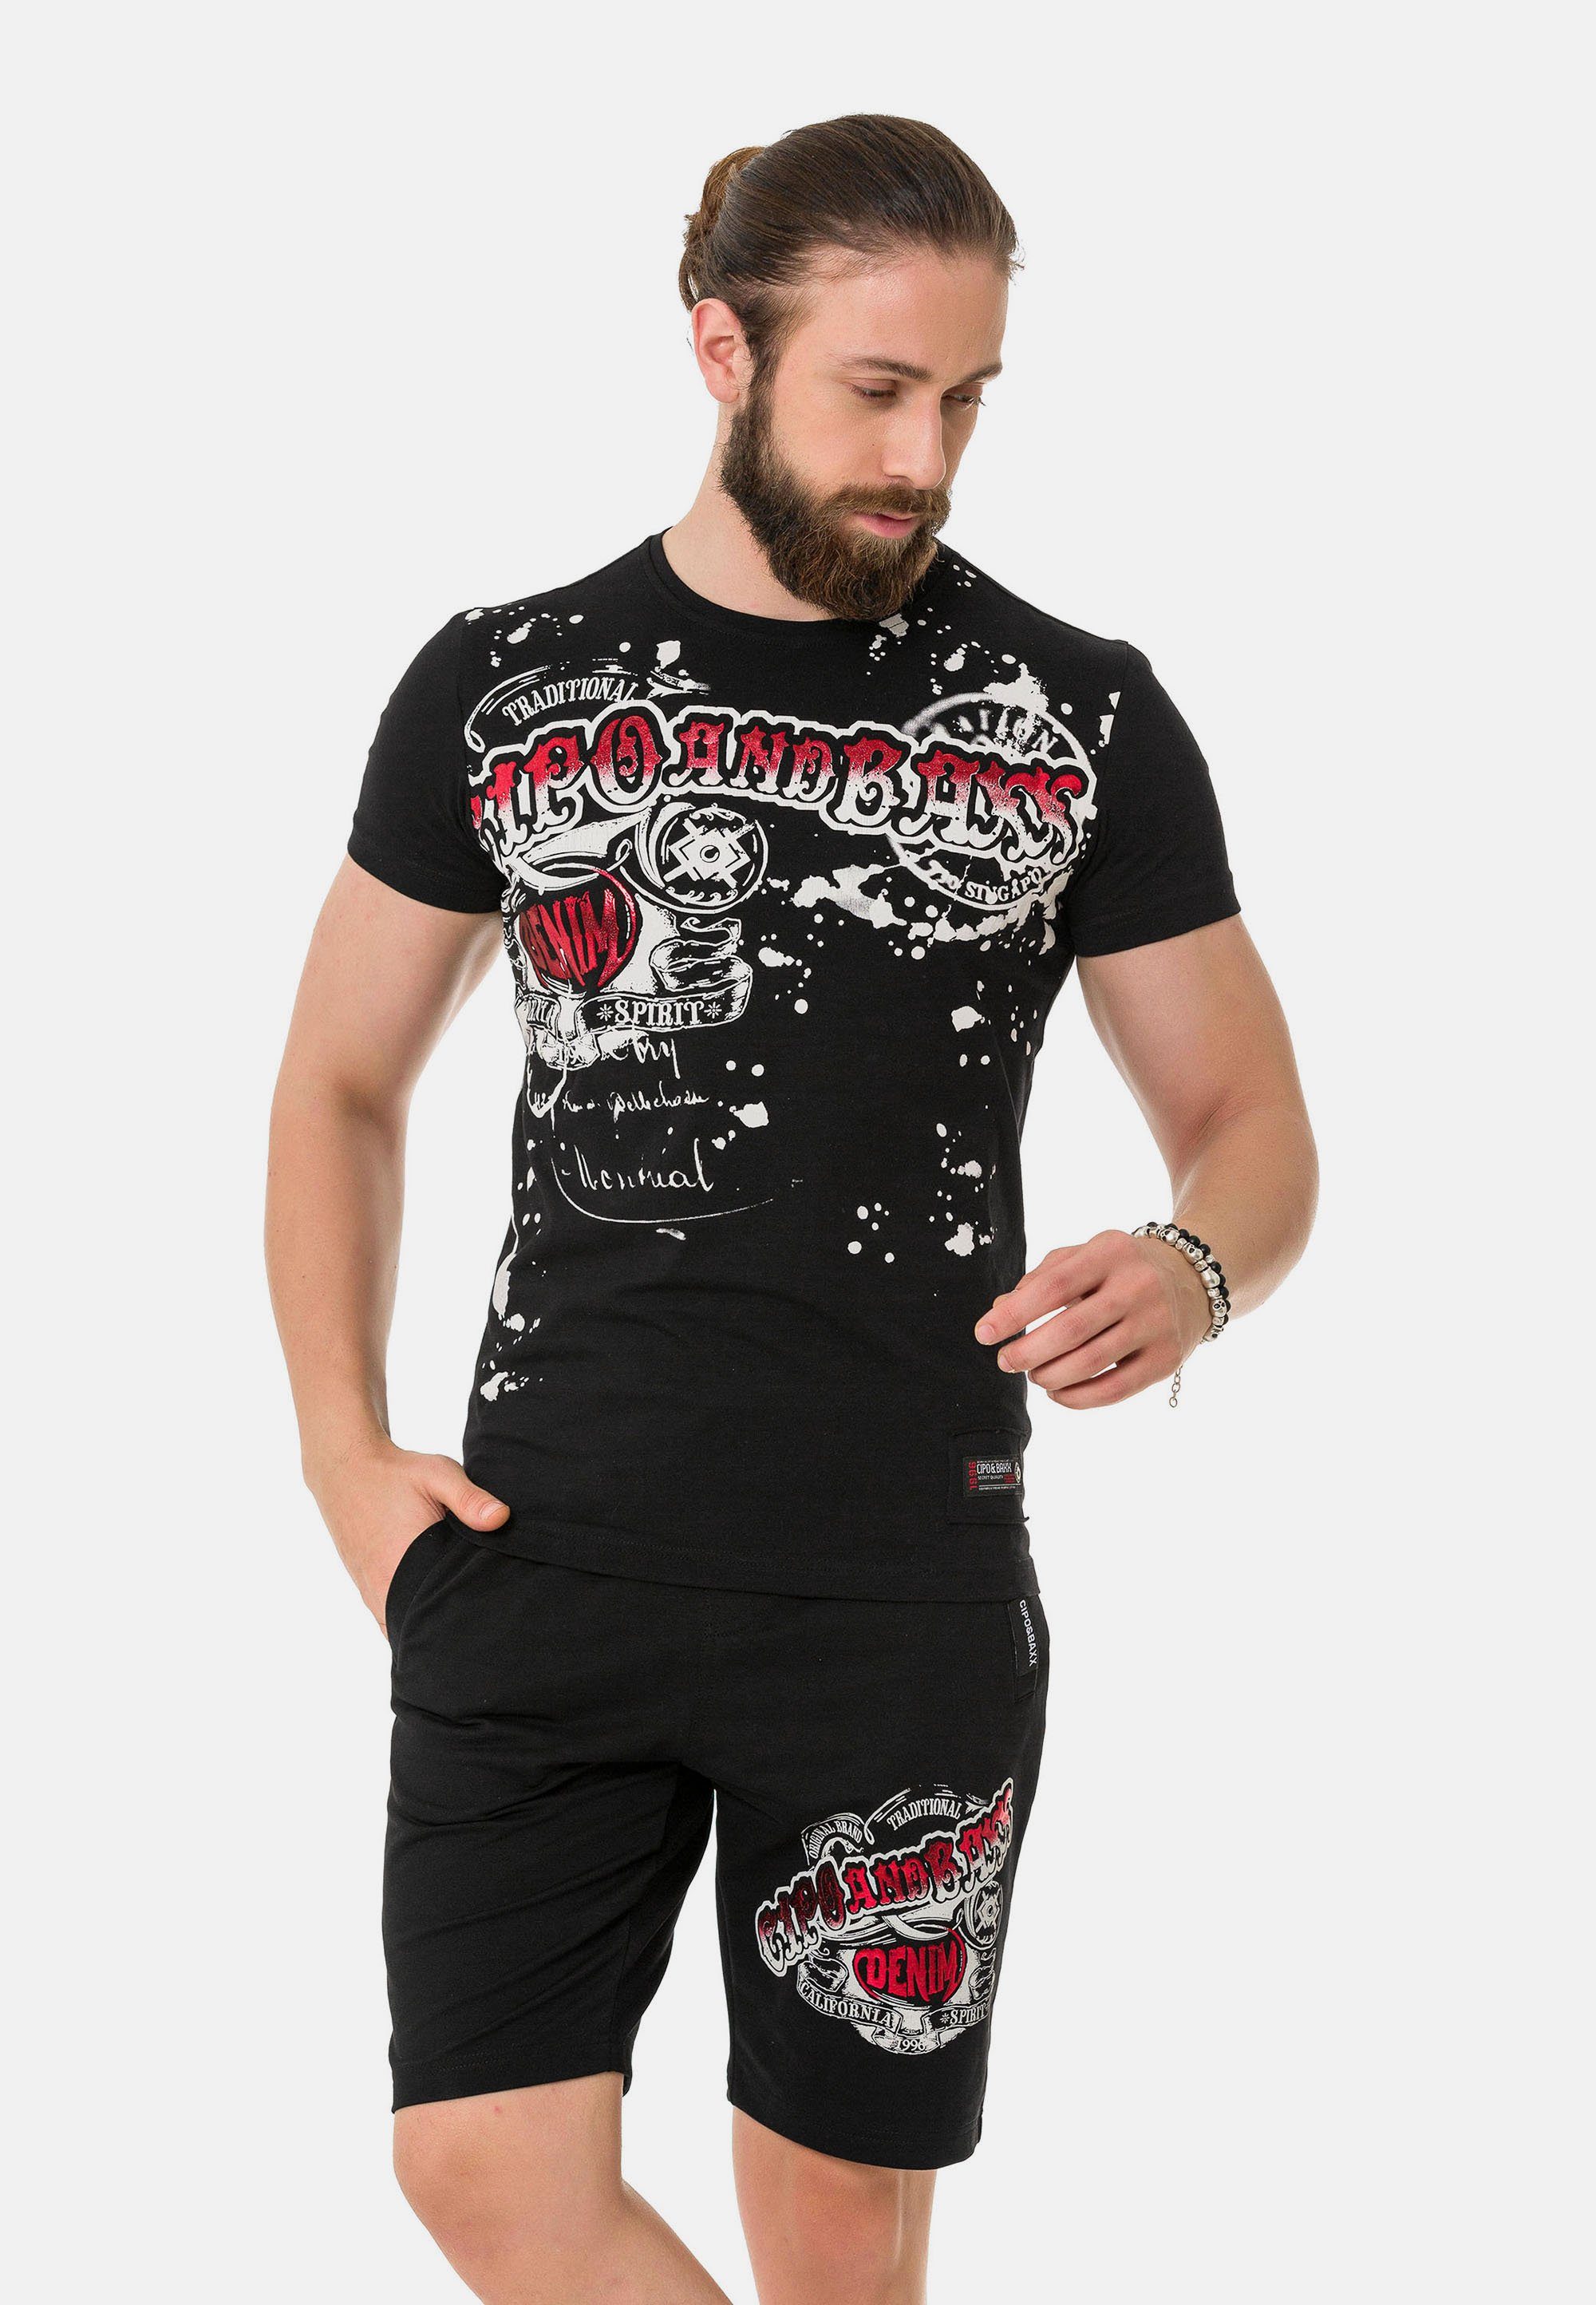 Markenprint T-Shirt coolem Baxx schwarz & Cipo mit